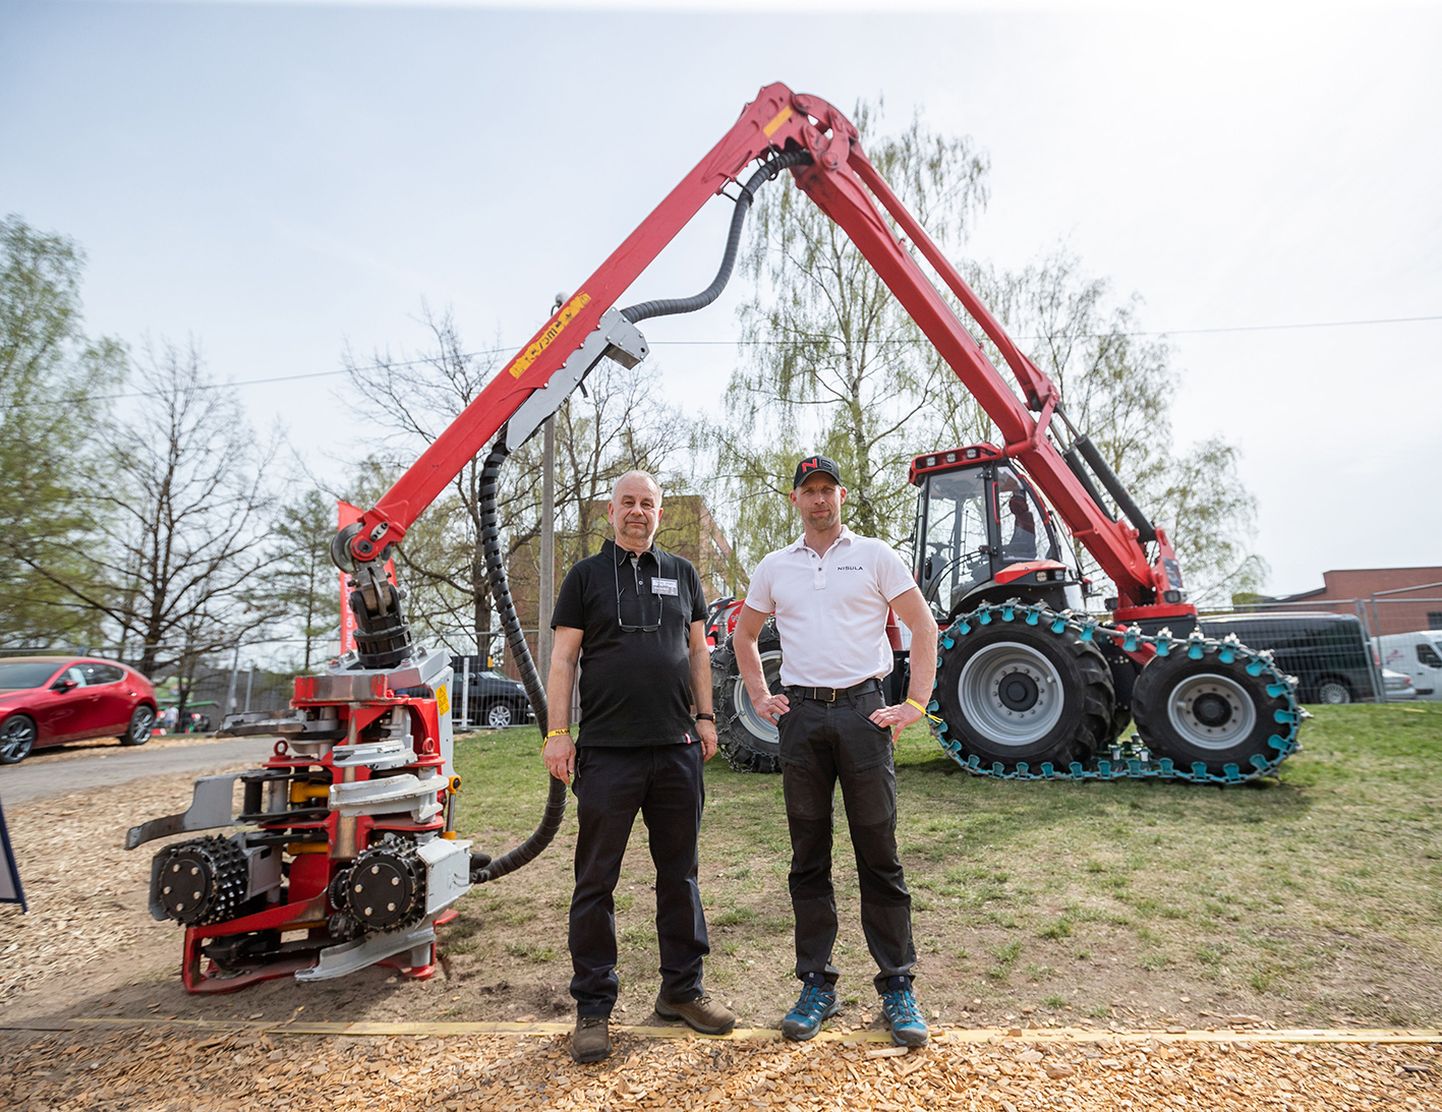 Toomas Jürgen (vasakul) ning Nisula müügi- ja turundusjuht Kalle Mattsson pidasid ettevõtte eksponaatidest üheks põnevamaks masinaks uut kuuerattalist N5 harvesteri.